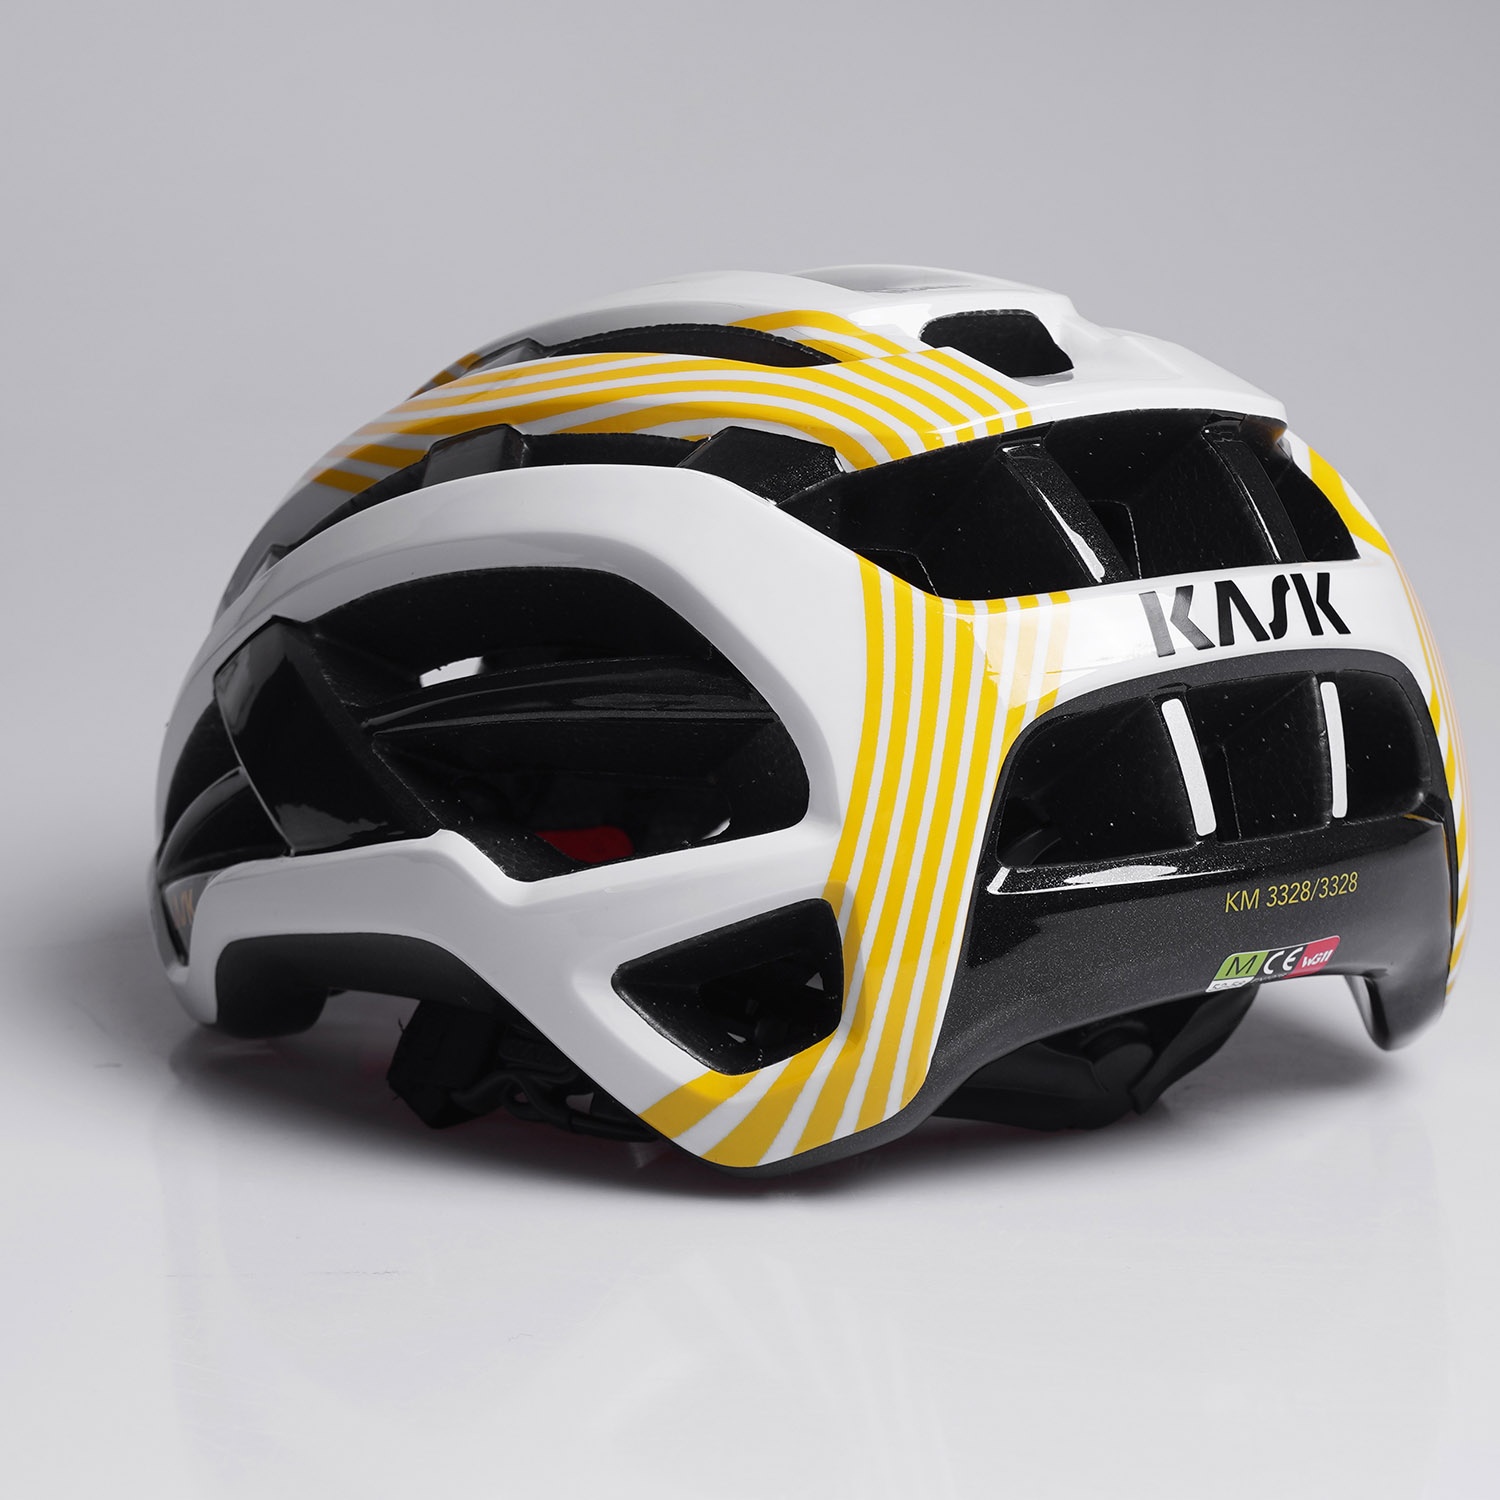 Akvarium Sammentræf Fjendtlig Kask Valegro Tour de France 2022 Limited Edition Cykelhjelm